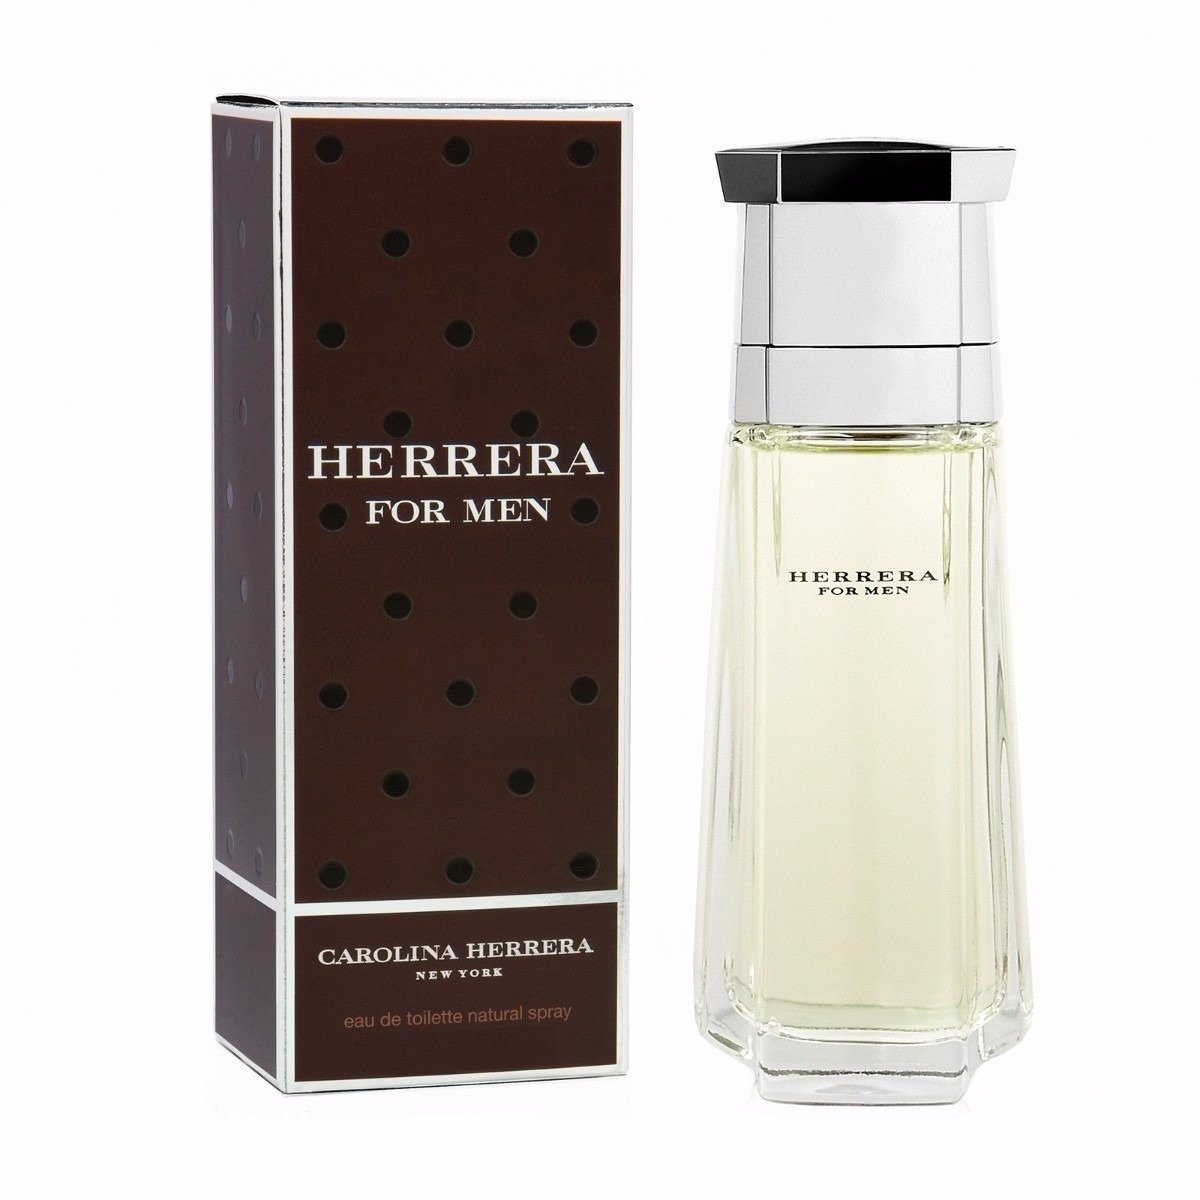 CAROLINA HERRERA - Herrera For Men para hombre / 200 ml Eau De Toilette Spray